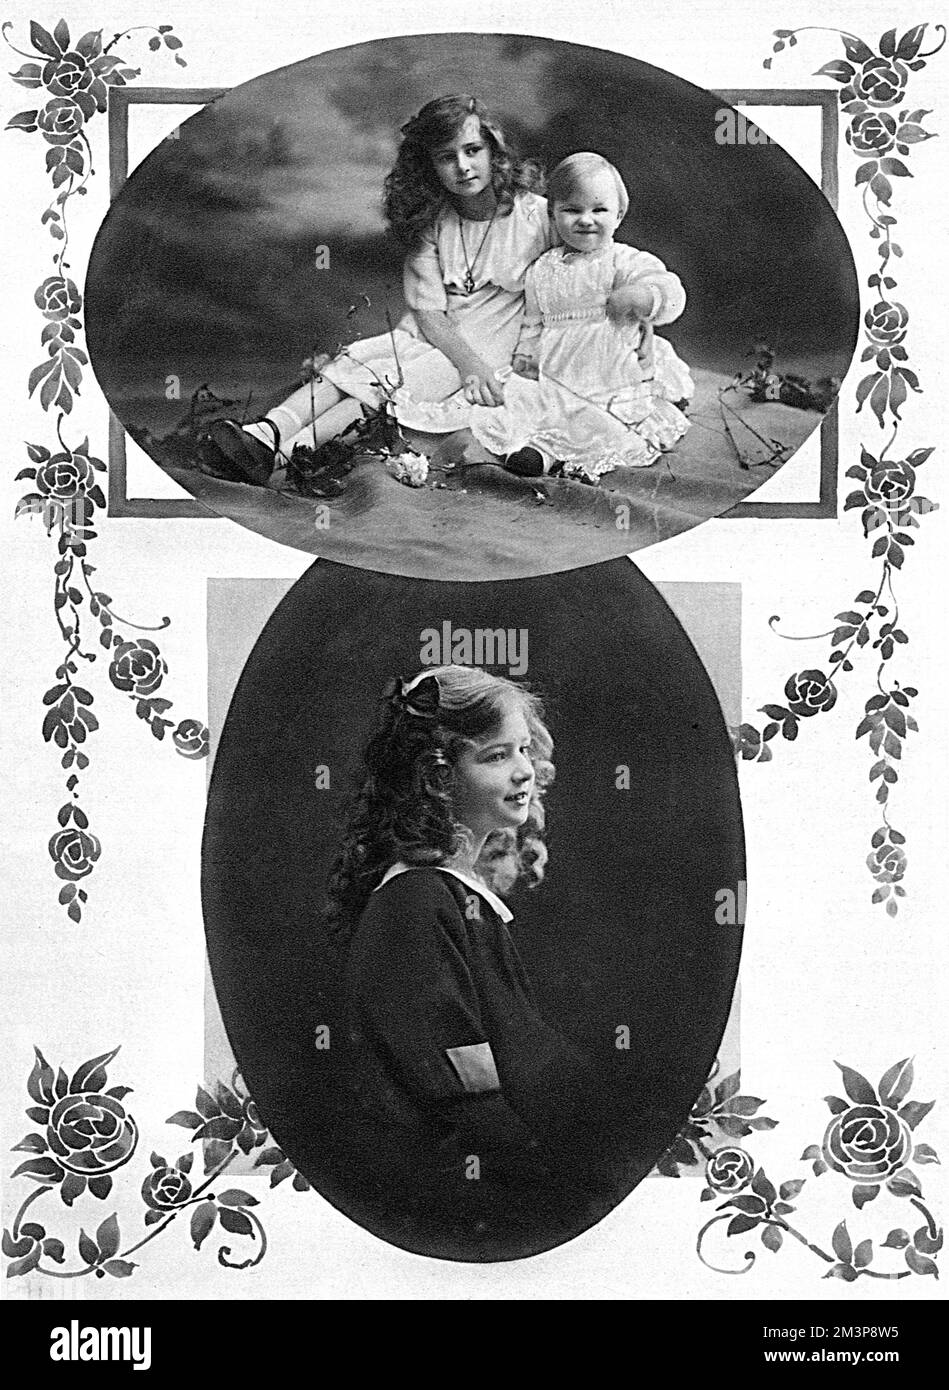 La princesse Ileana et le prince Mircea, deux des fils du roi Ferdinand et de la reine Marie de Roumanie (ce dernier était autrefois la princesse Marie d'Édimbourg, puis Saxe-Coburg). Ileana (1909-1991) était la plus jeune de leurs trois filles et allait épouser Archduke Anton, d'Autriche, prince de Toscane. Mircea (1913-16), le plus jeune enfant du couple, est mort tragiquement de la typhoïde en 1916, avec des troupes ennemies avançant à travers le pays et le chaos tout autour. Peu de temps après, la famille a été forcée d'évacuer le palais et ne pouvait pas revenir pendant deux ans. Date: 1915 Banque D'Images